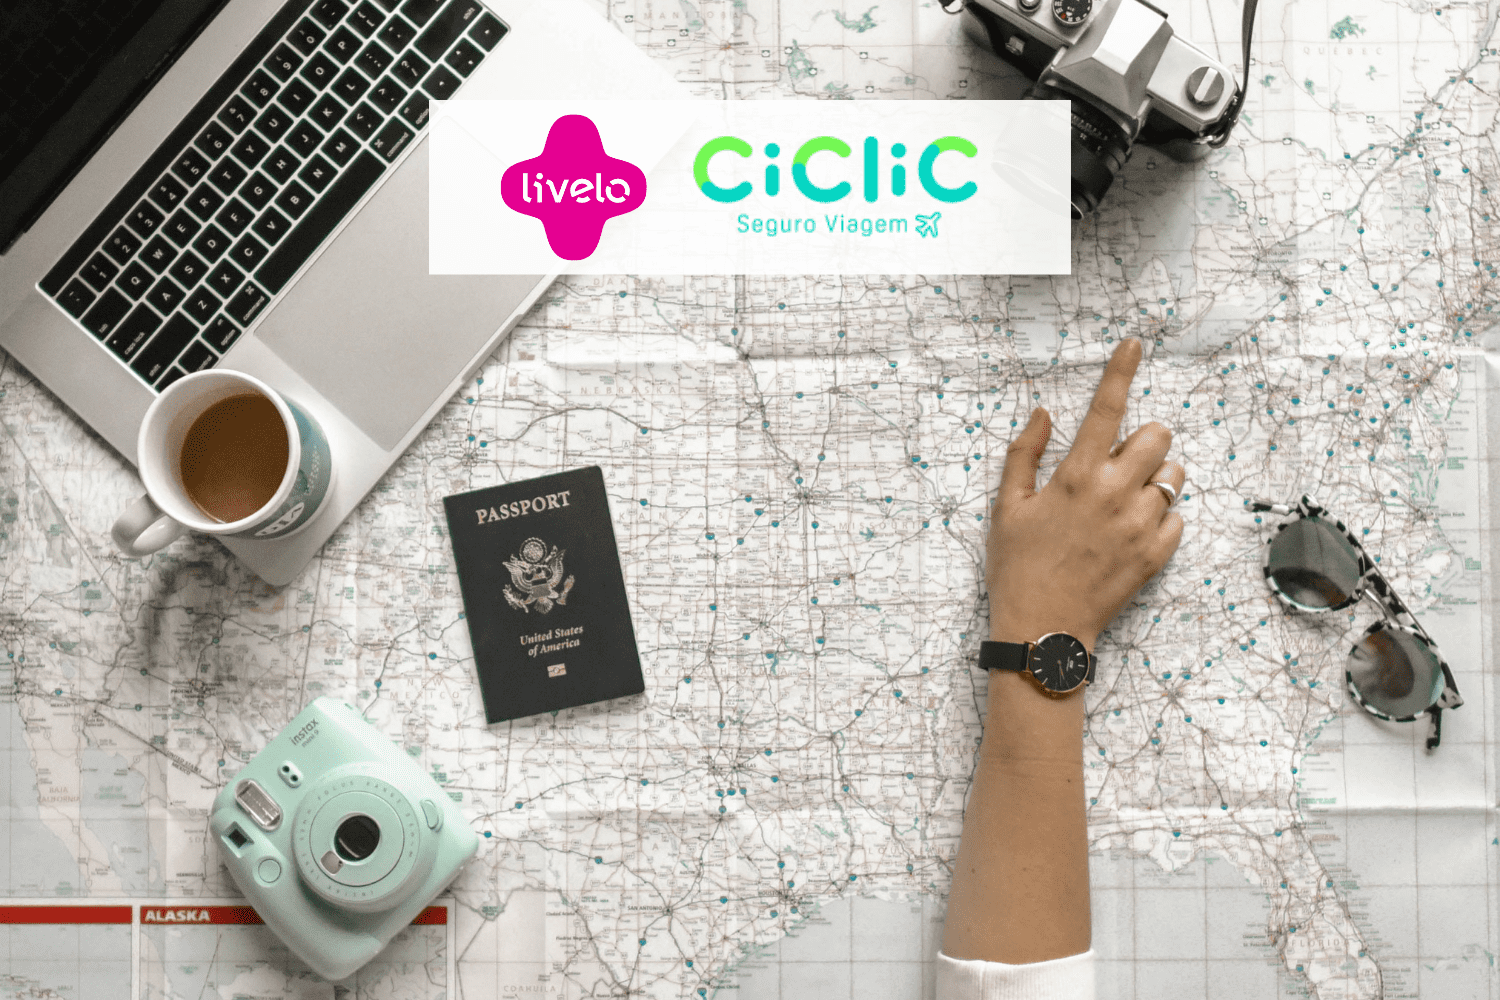 pessoa olhando um mapa de viagem com notebook, passaporte e câmeras com logo Livelo e Ciclic